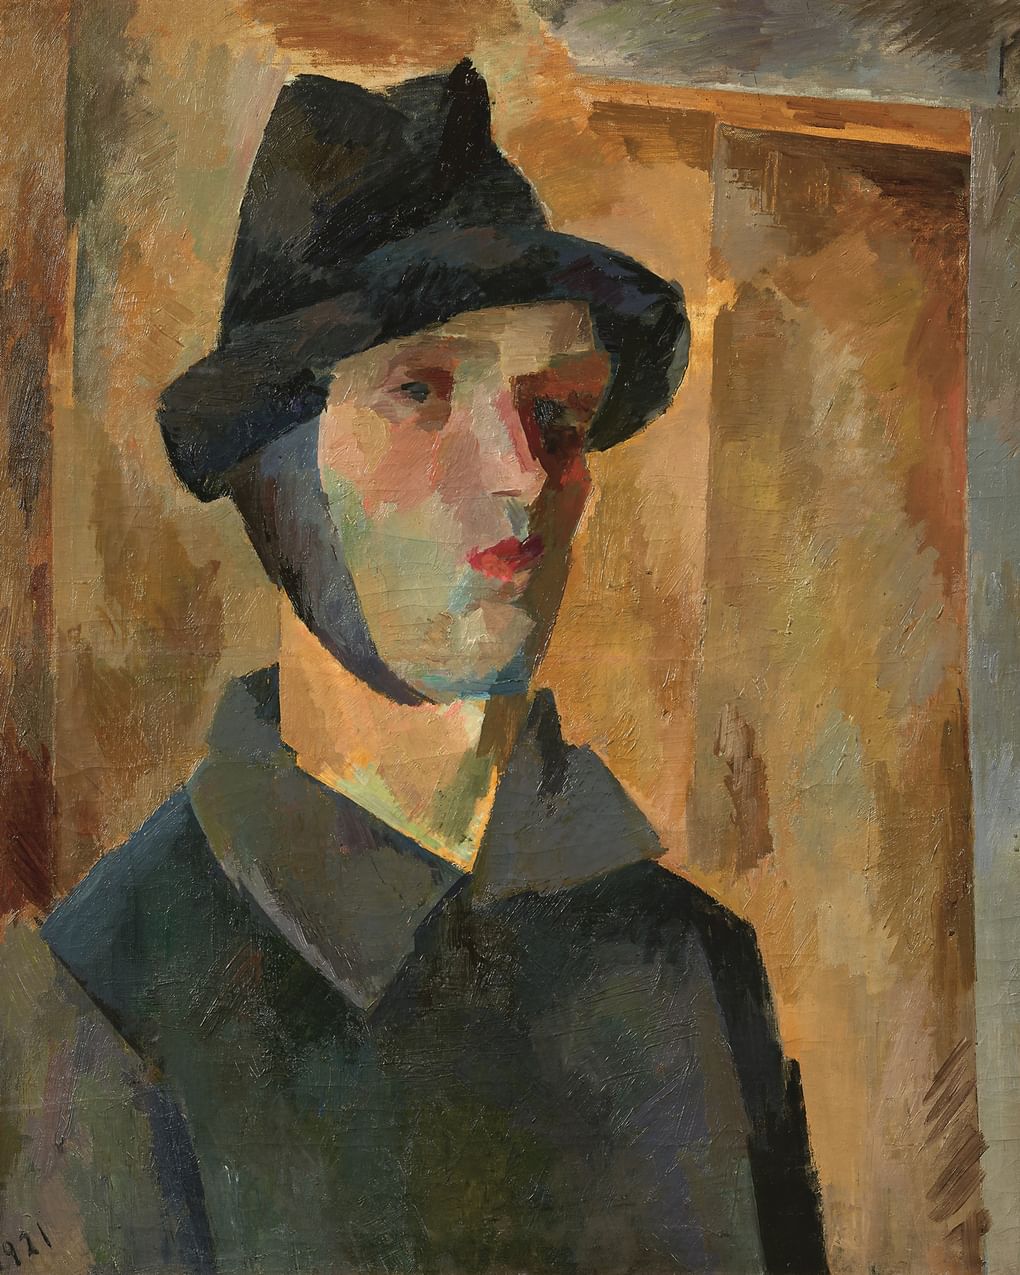 Роберт Фальк. Автопортрет с завязанным ухом (фрагмент). 1921. Государственная Третьяковская галерея, Москва